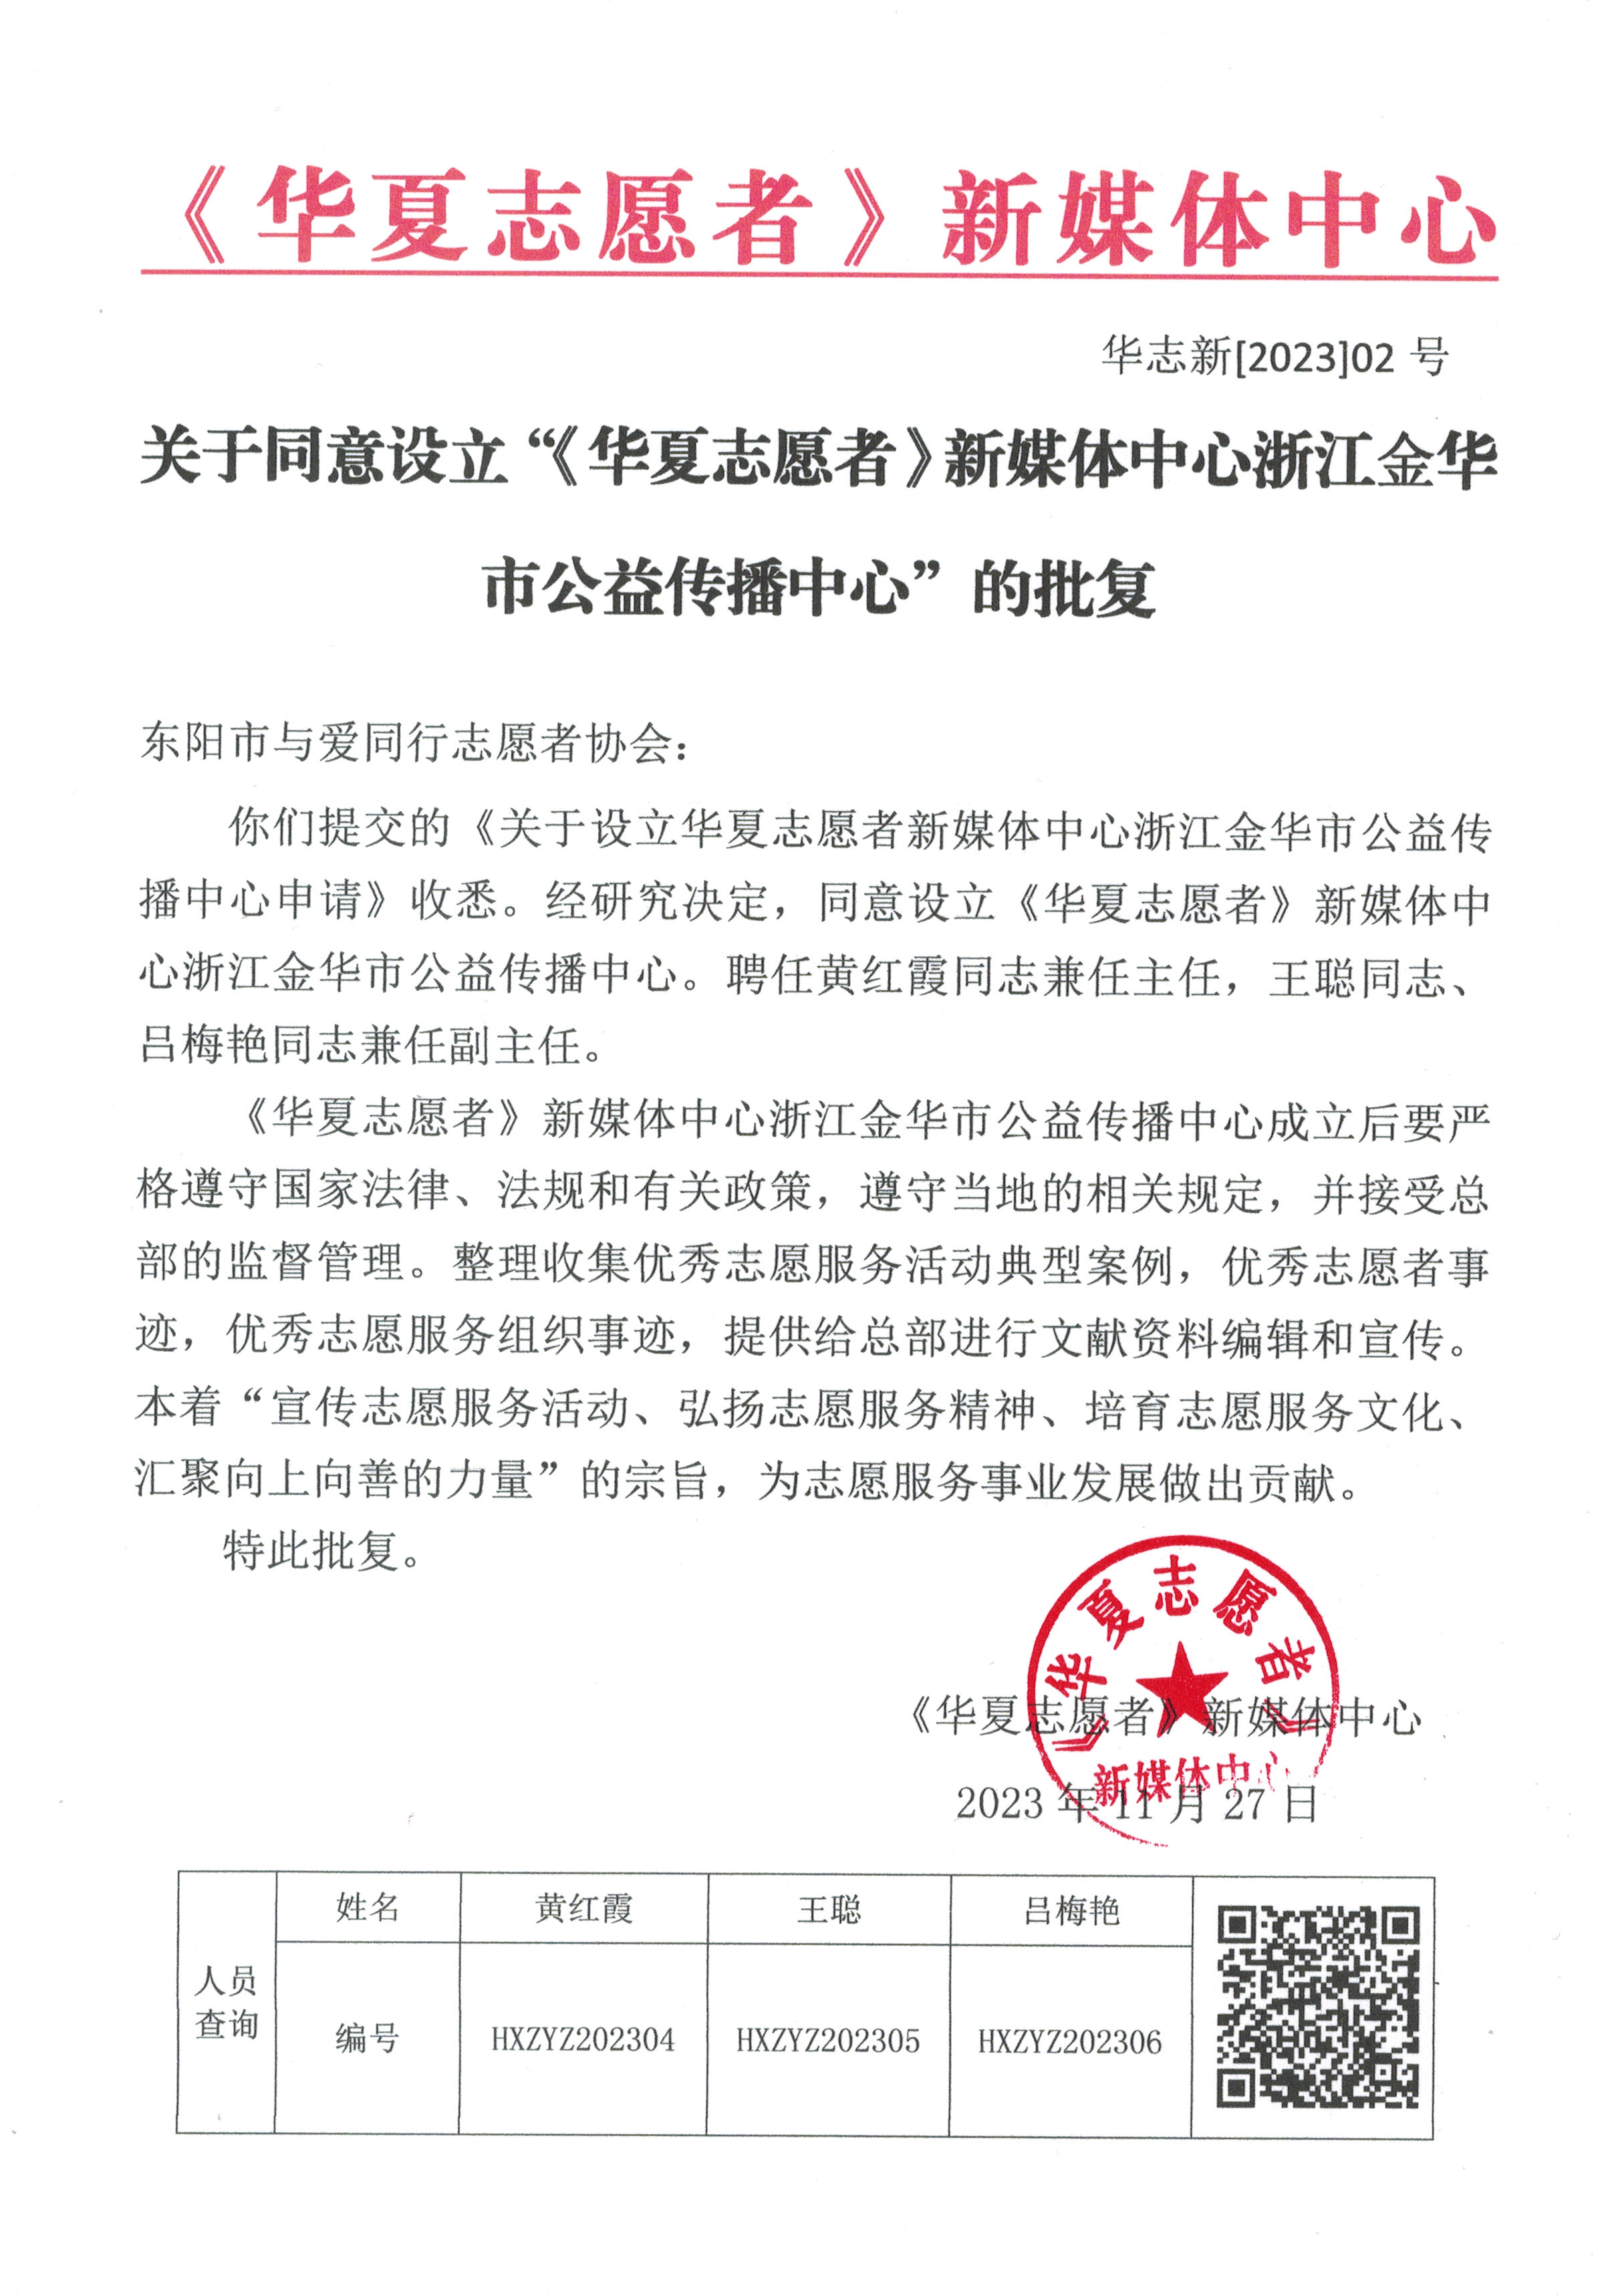 《华夏志愿者》新媒体中心浙江金华市公益传播中心批准设立